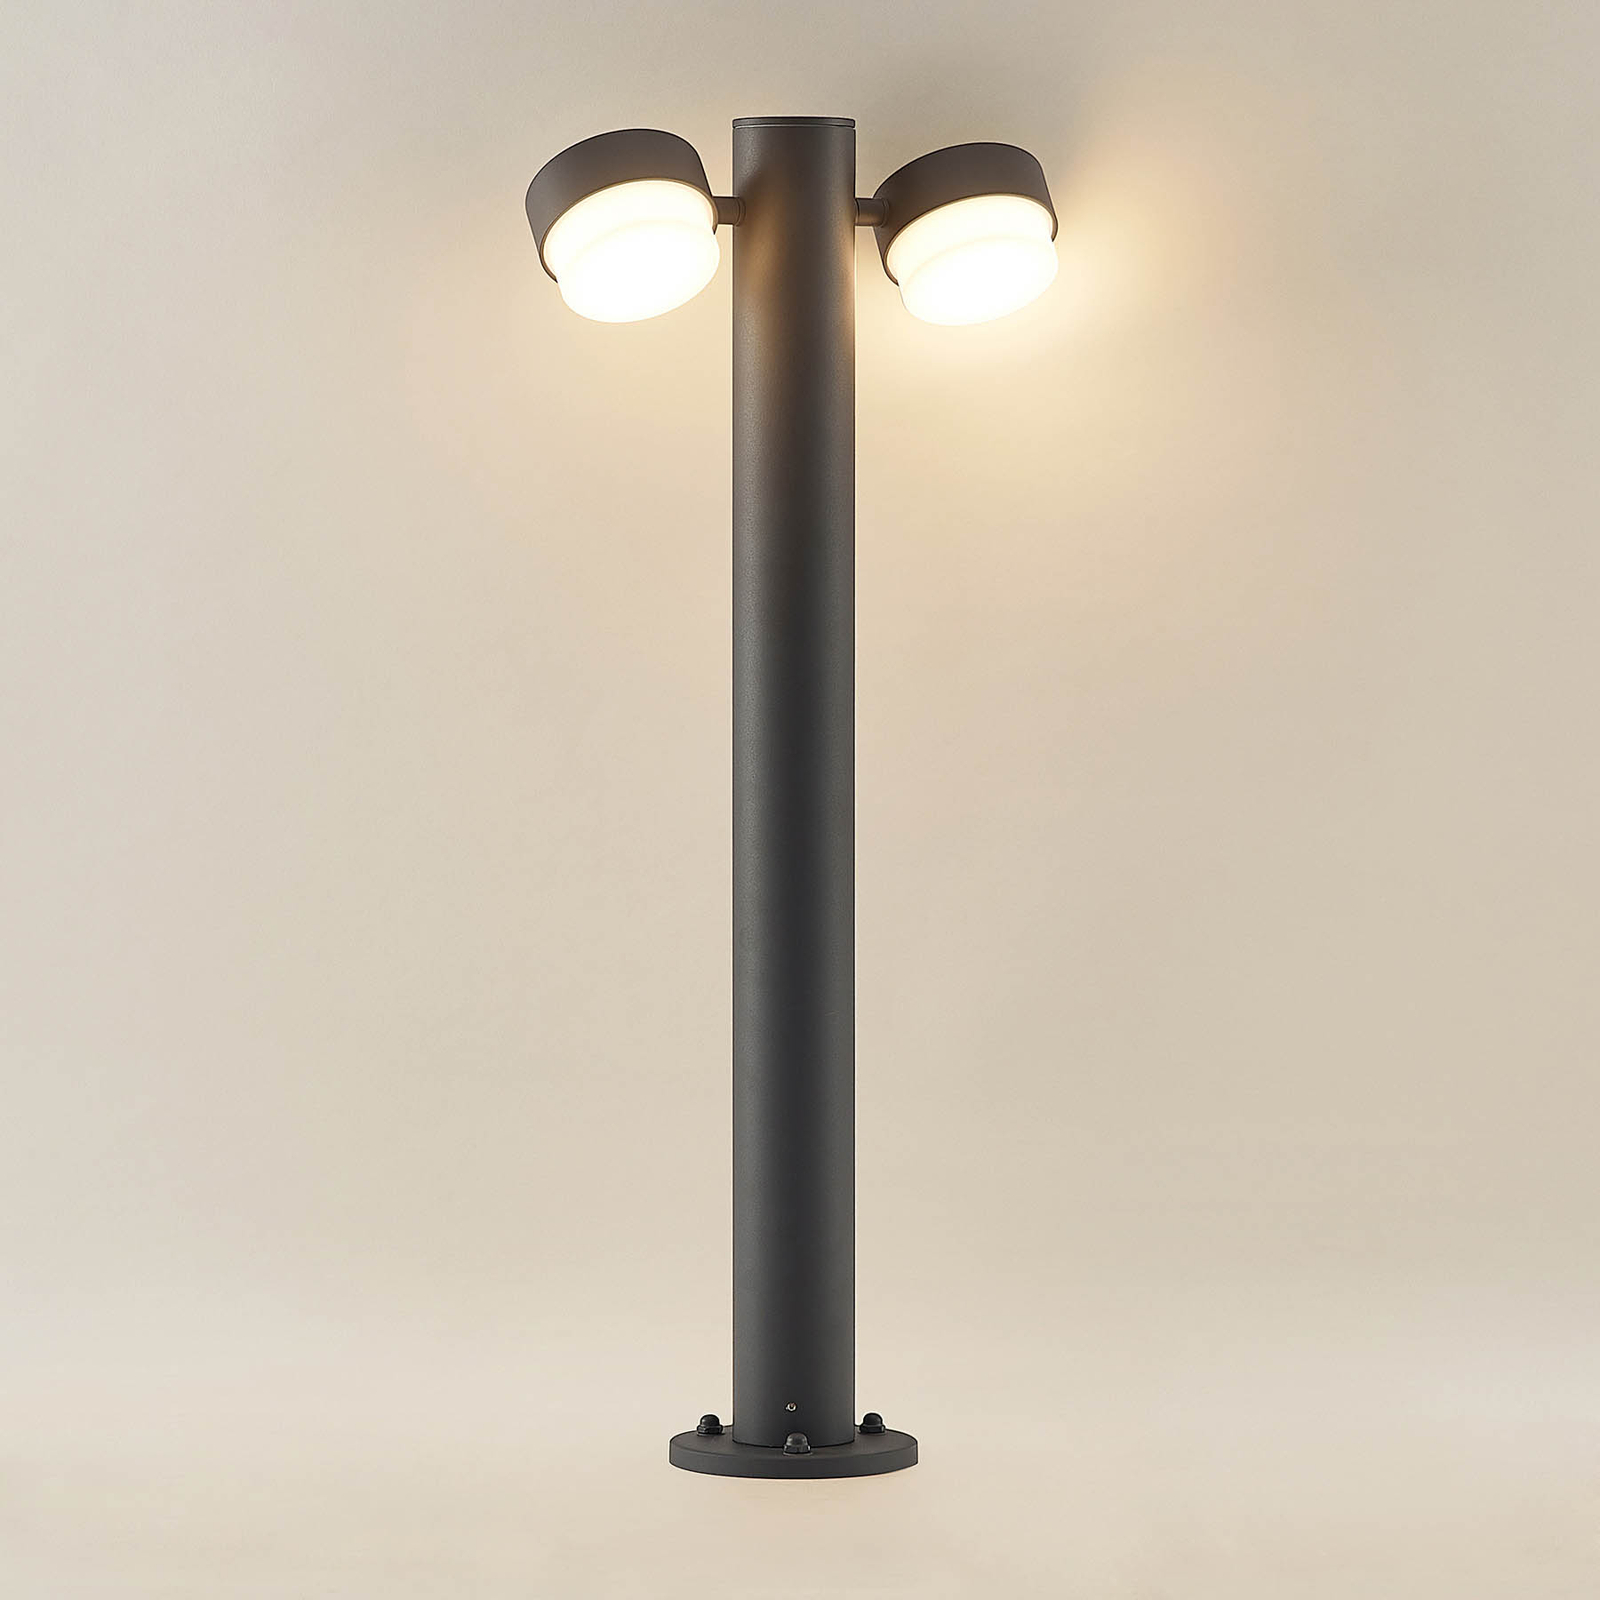 Lucande Marvella borne lumineuse, 2 lampes, 75 cm